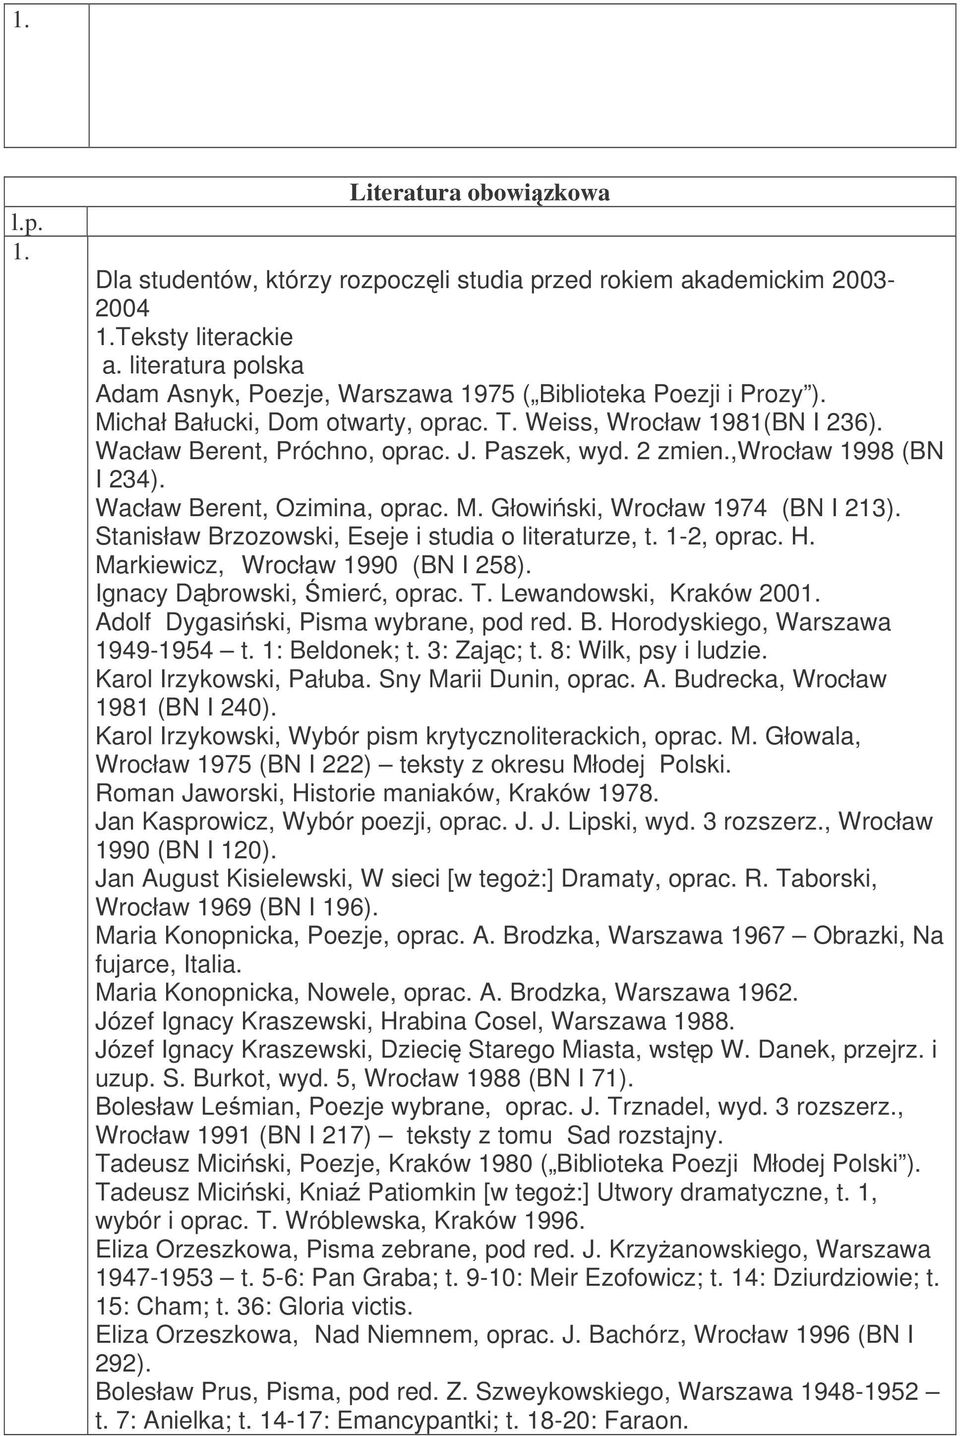 2 zmien.,wrocław 1998 (BN I 234). Wacław Berent, Ozimina, oprac. M. Głowiski, Wrocław 1974 (BN I 213). Stanisław Brzozowski, Eseje i studia o literaturze, t. 1-2, oprac. H.